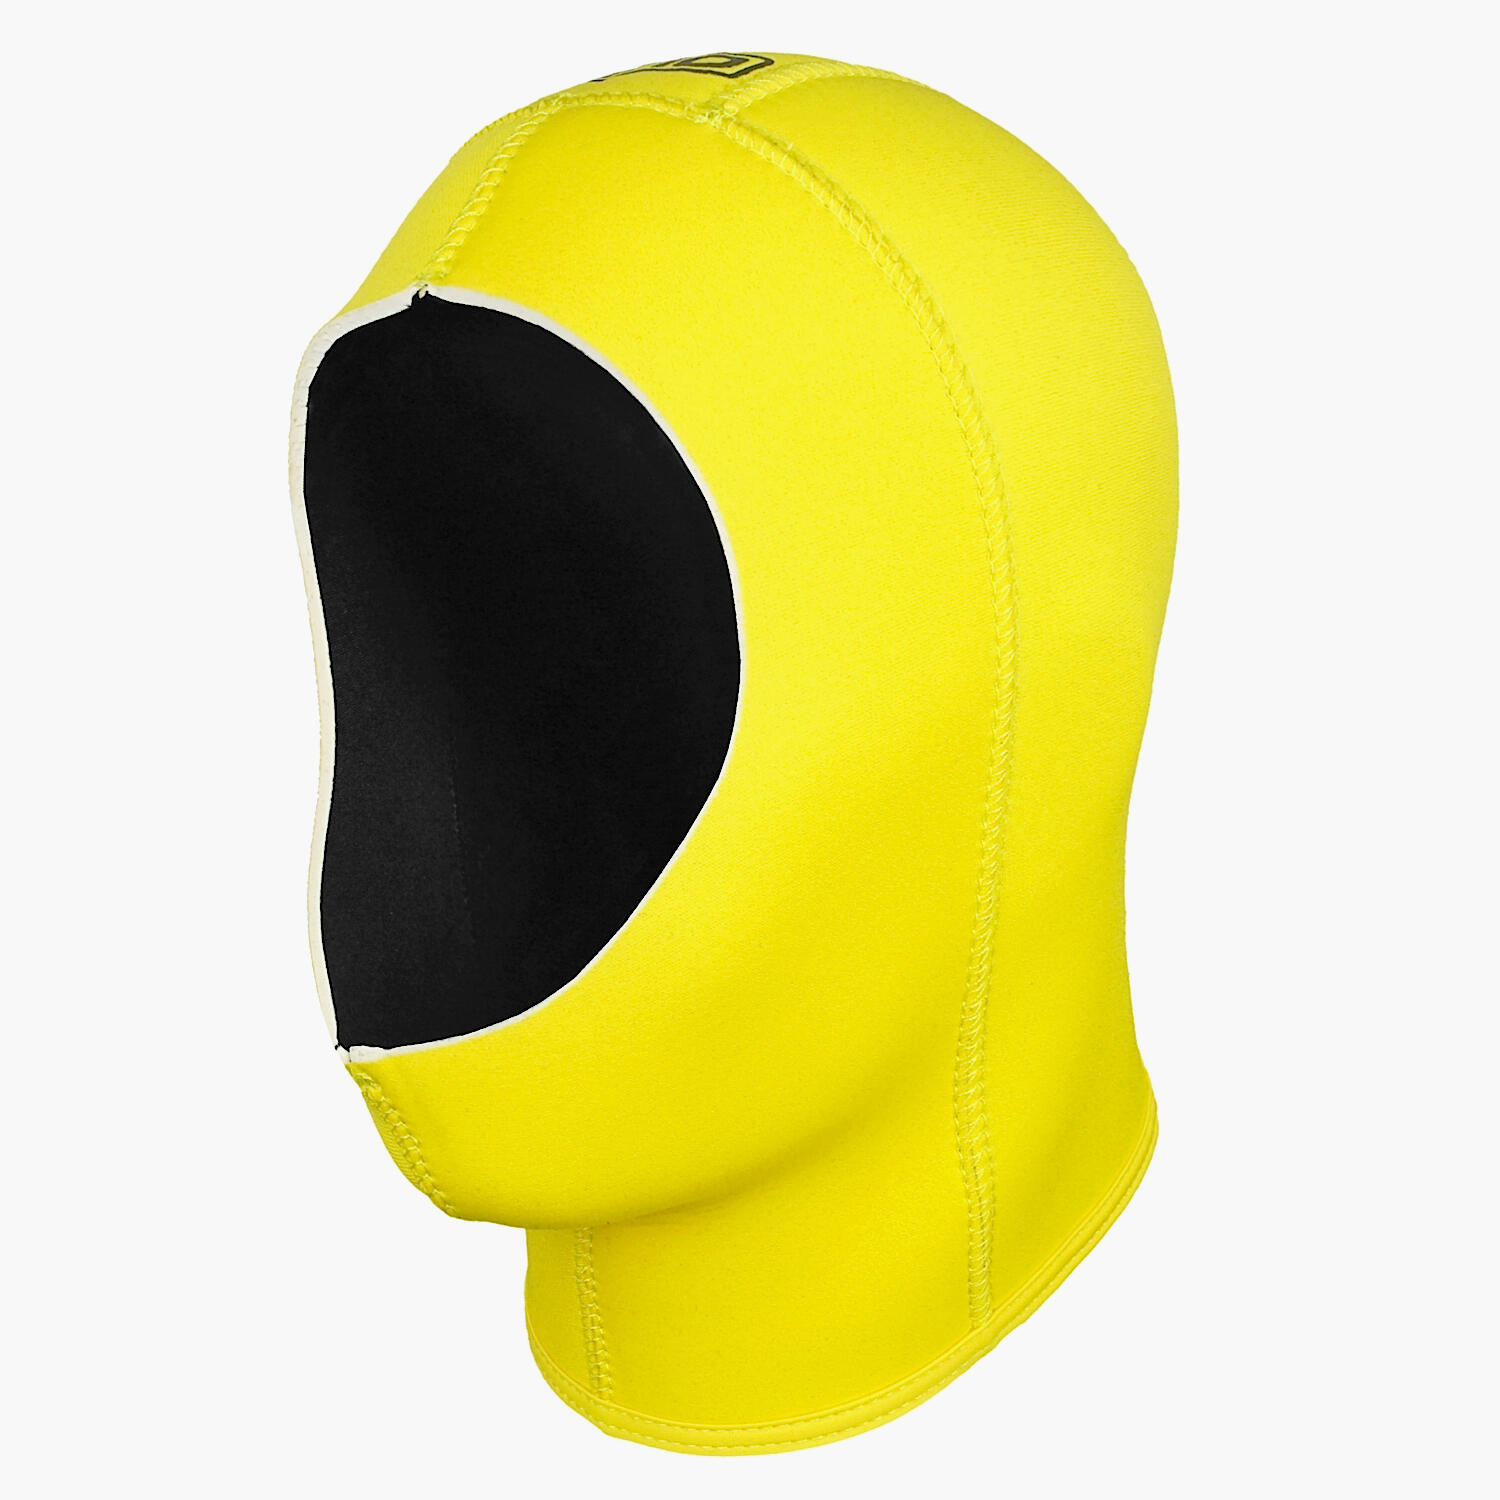 Lomo Yellow Wetsuit Hood - 5mm Hi Vis Yellow Neoprene Hood 1/4